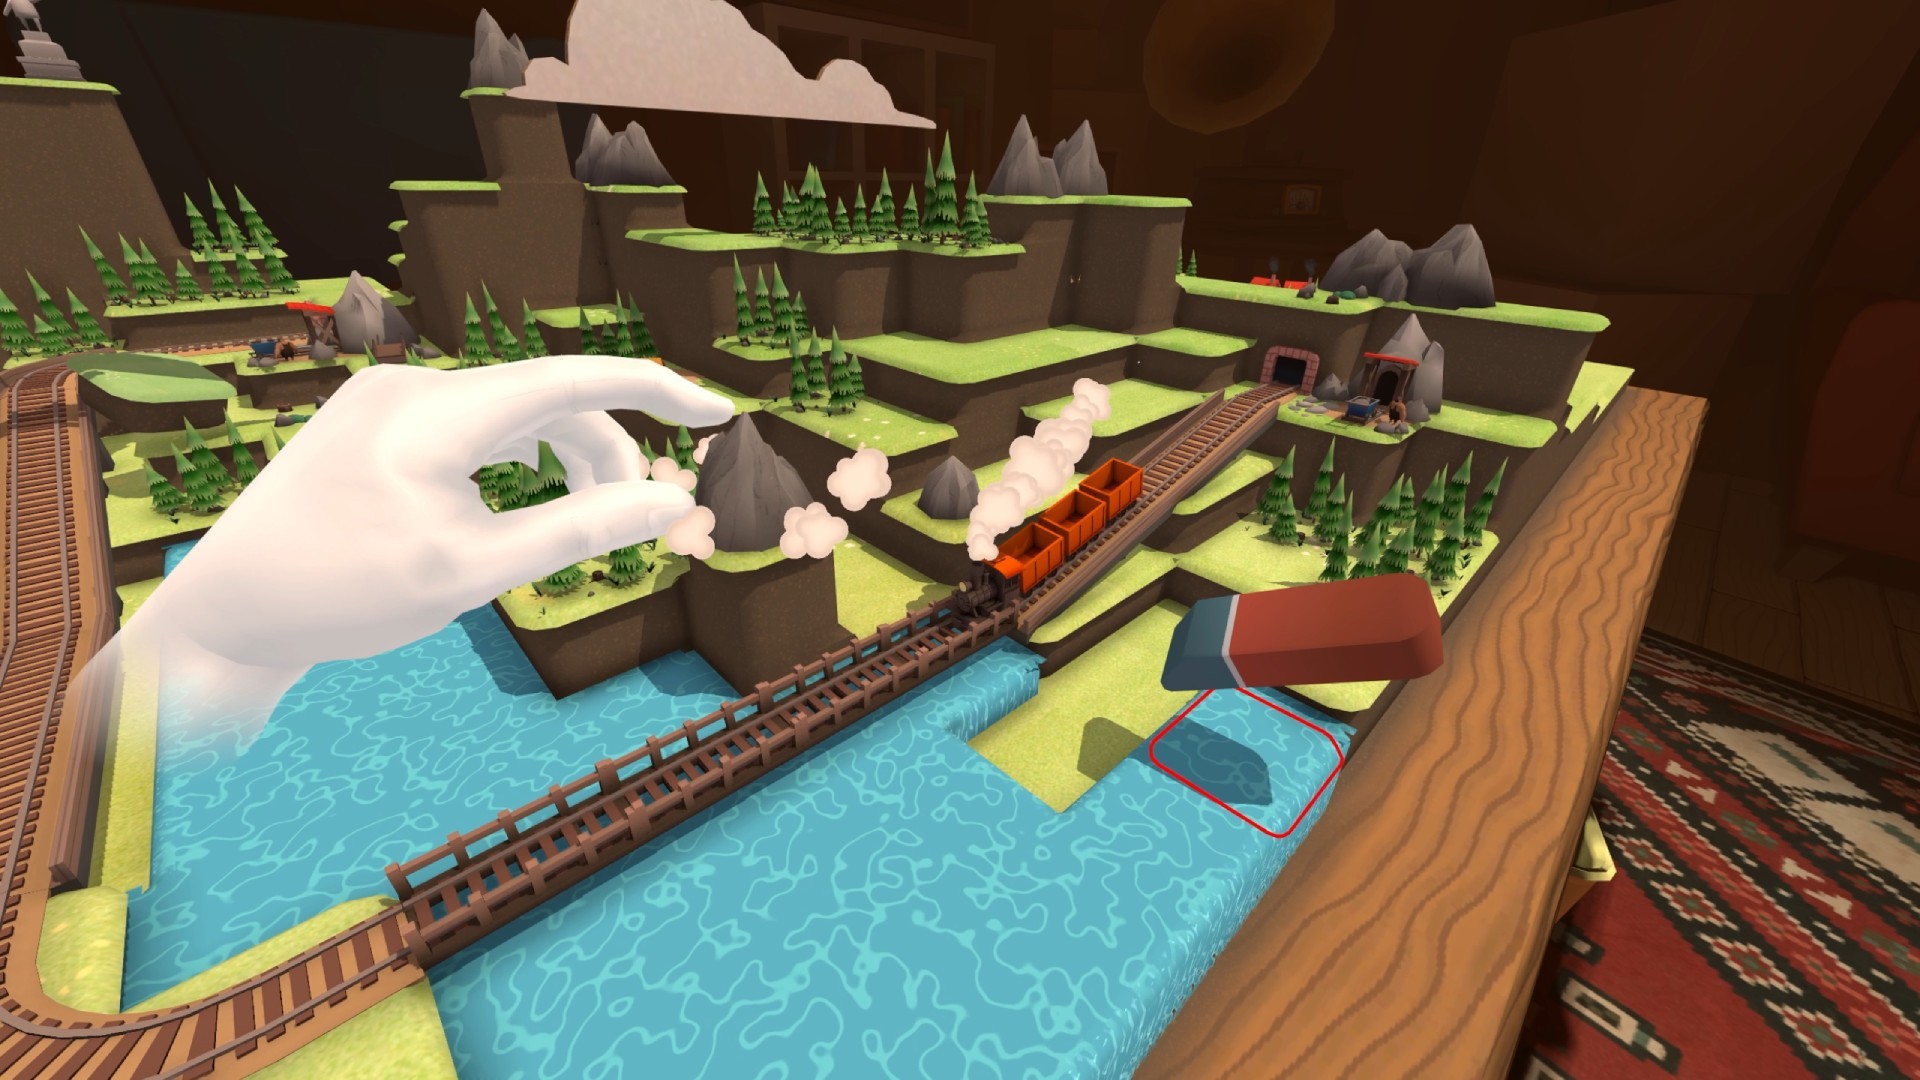 Toy Trains Infinite Loop Update